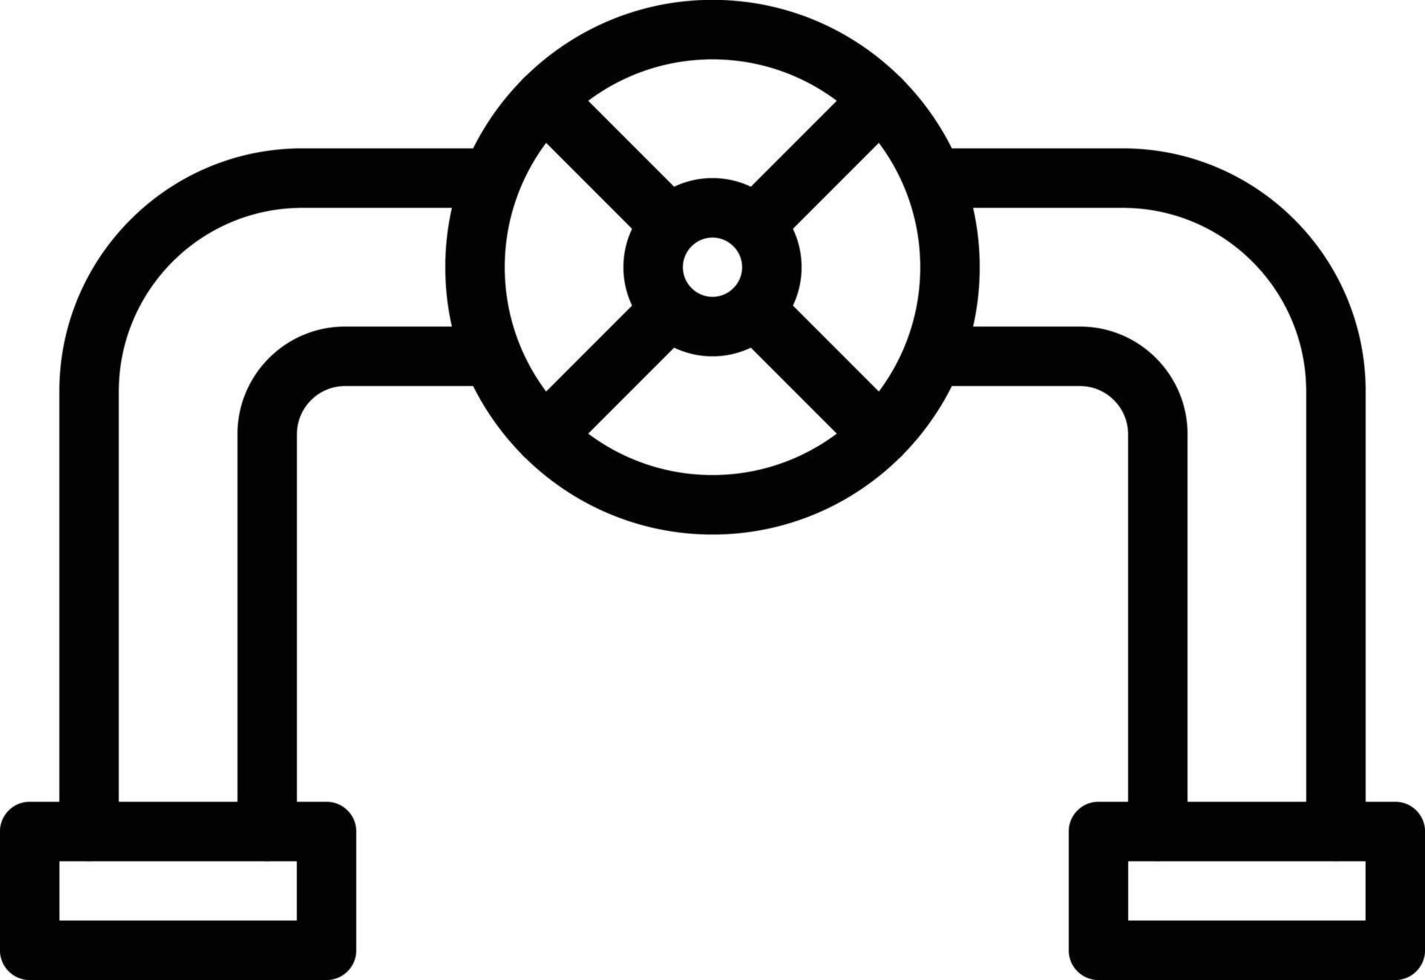 illustrazione vettoriale della valvola su uno sfondo. simboli di qualità premium. icone vettoriali per il concetto e la progettazione grafica.